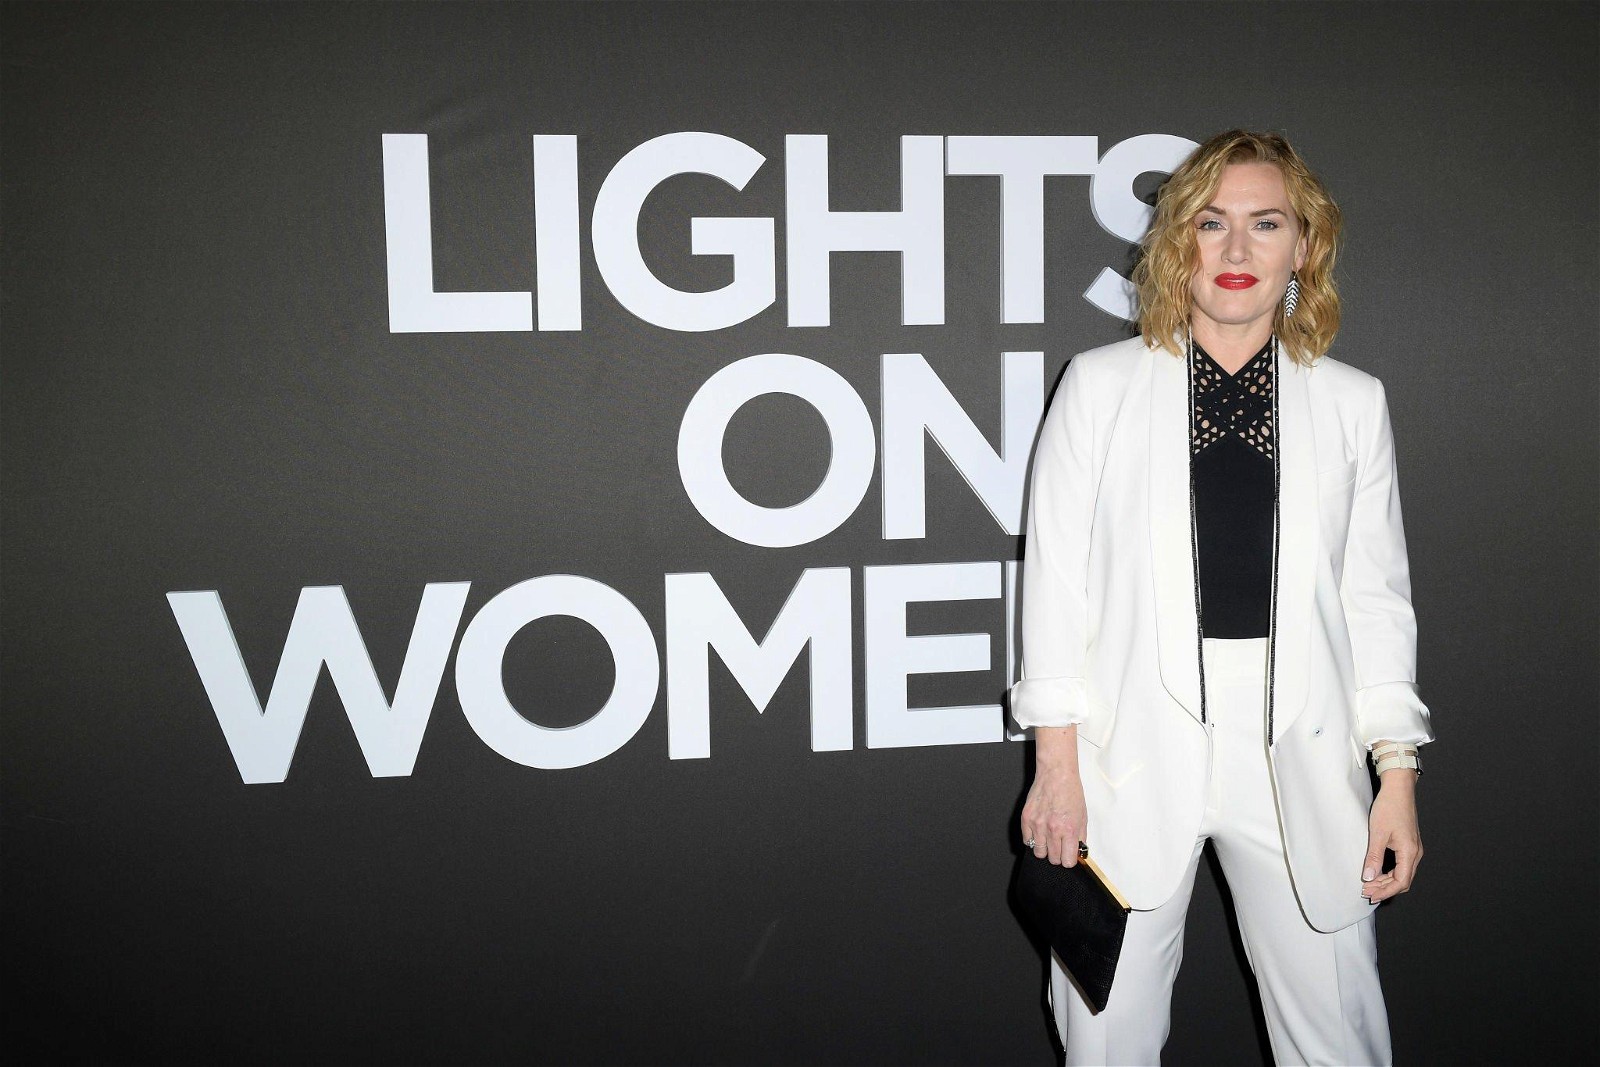 Kate Winslet Lights on Women Awards